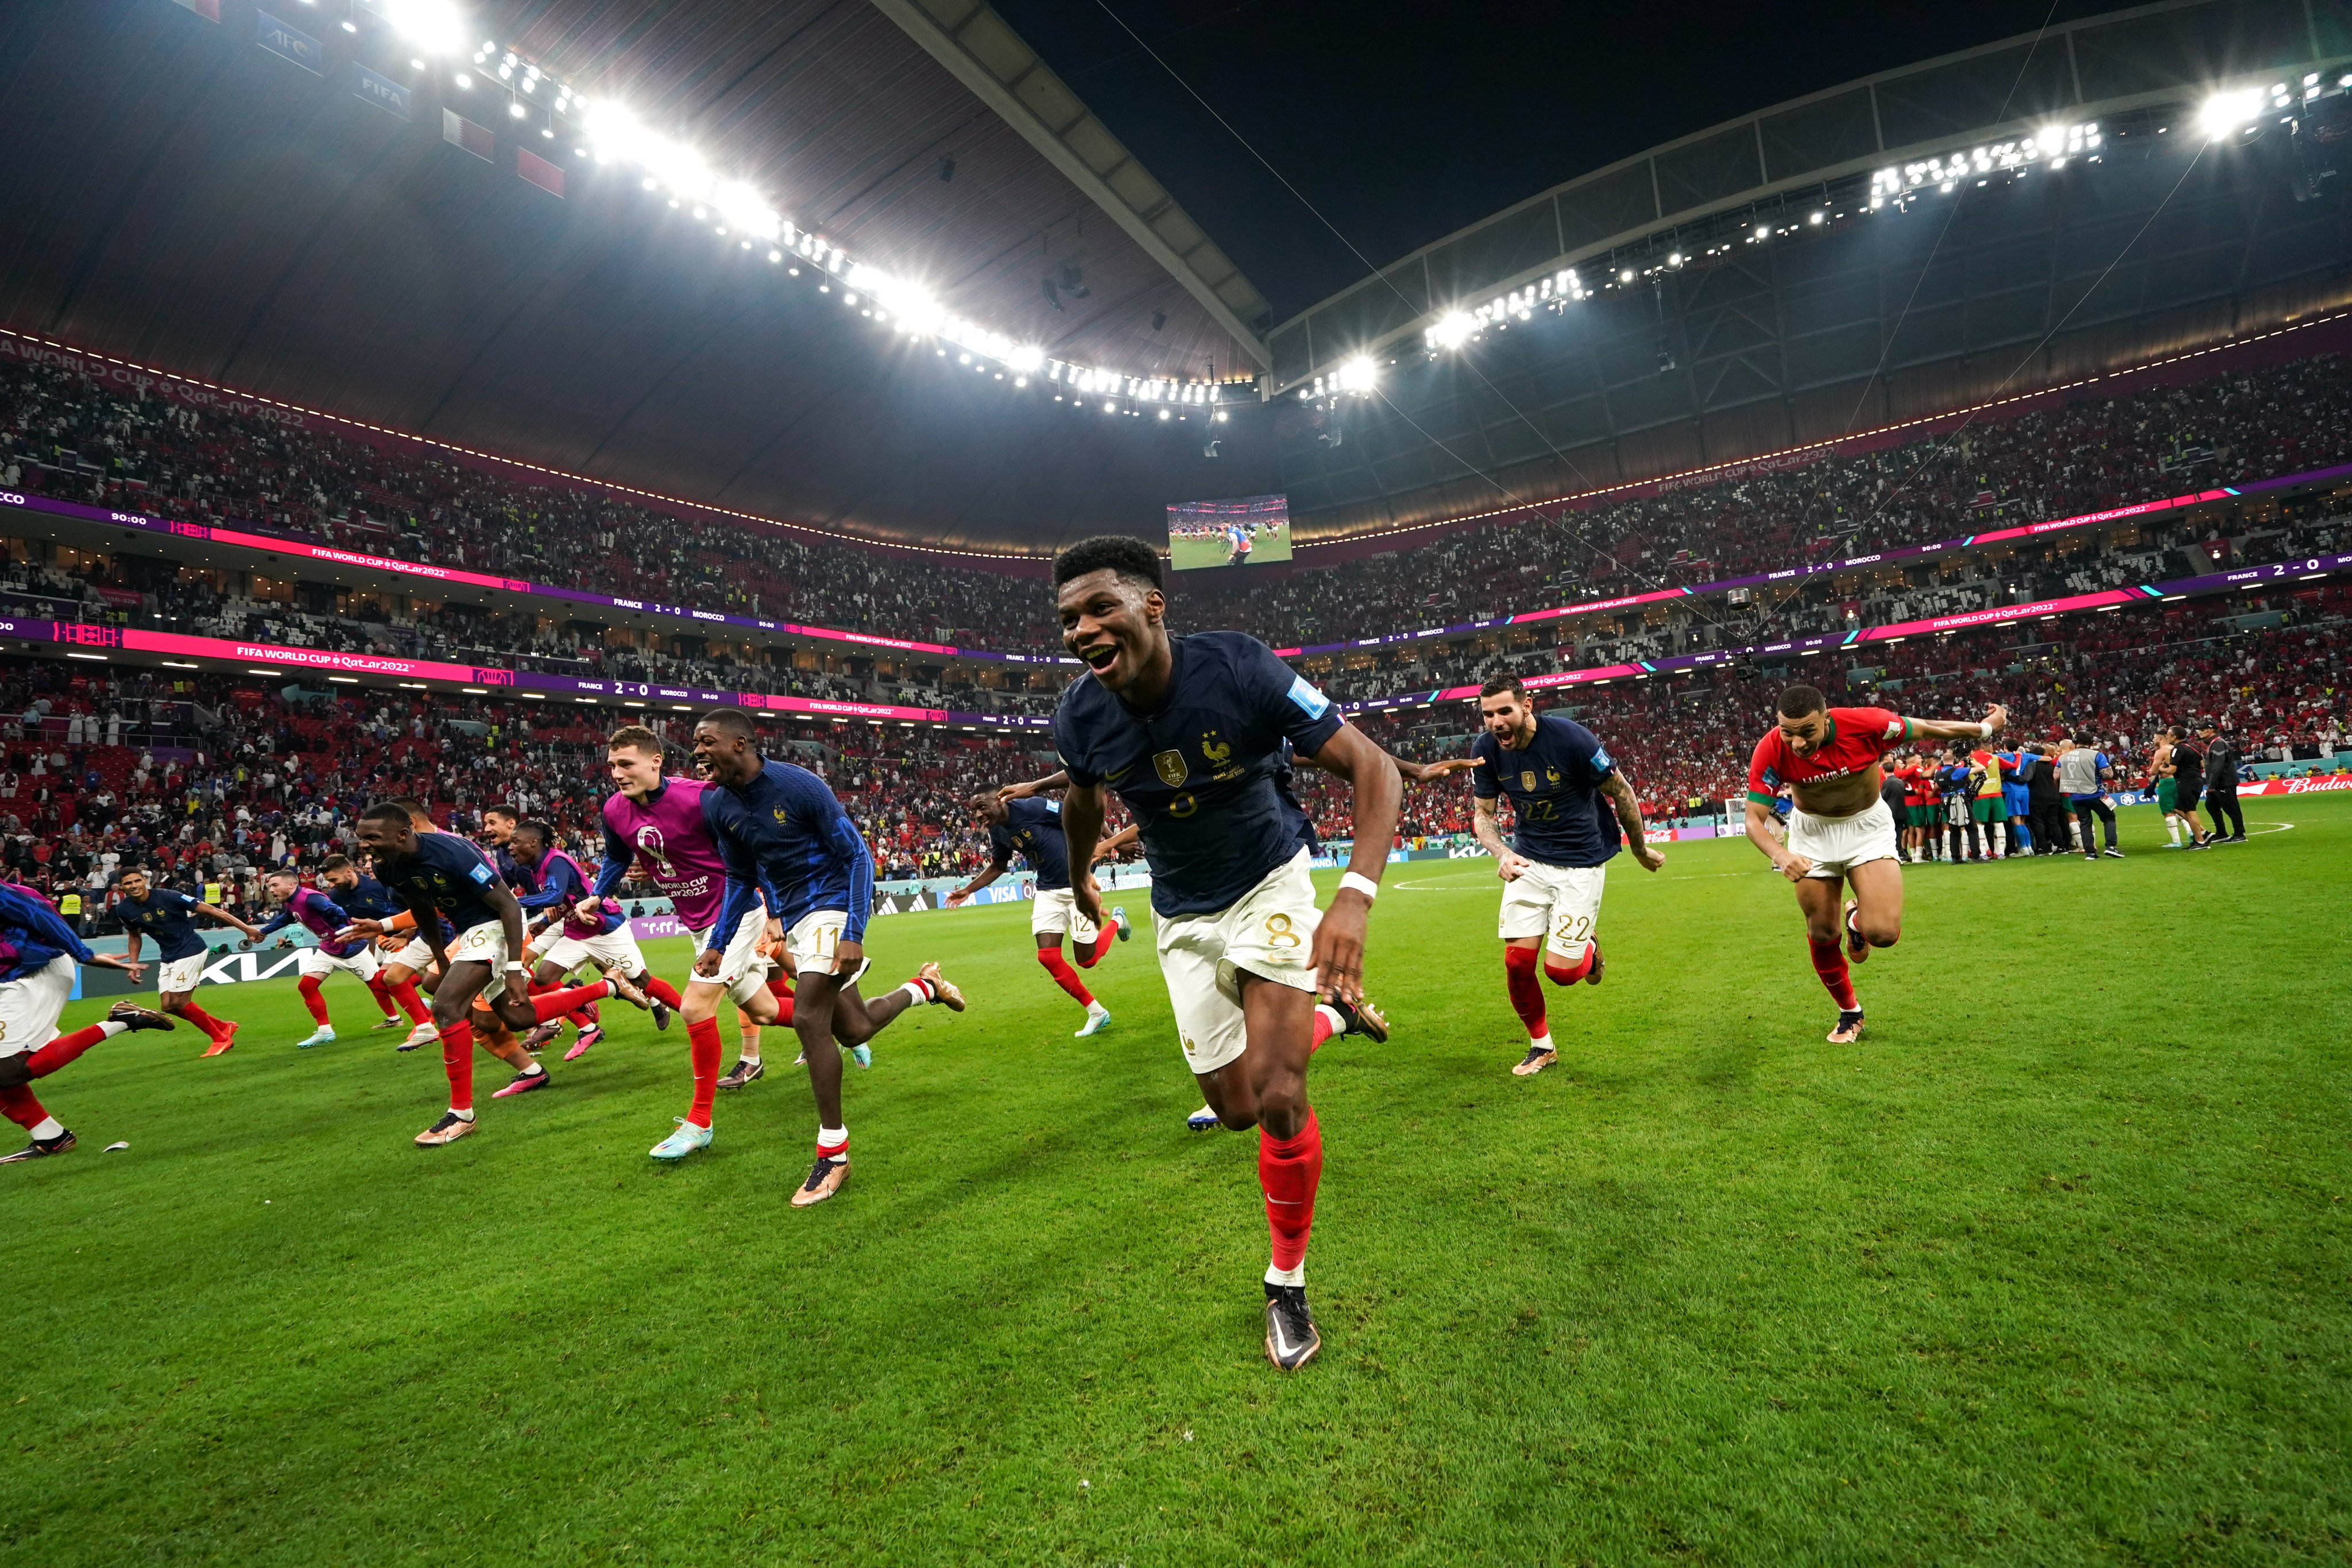 Mundial-2022: França na final pela segunda vez consecutiva